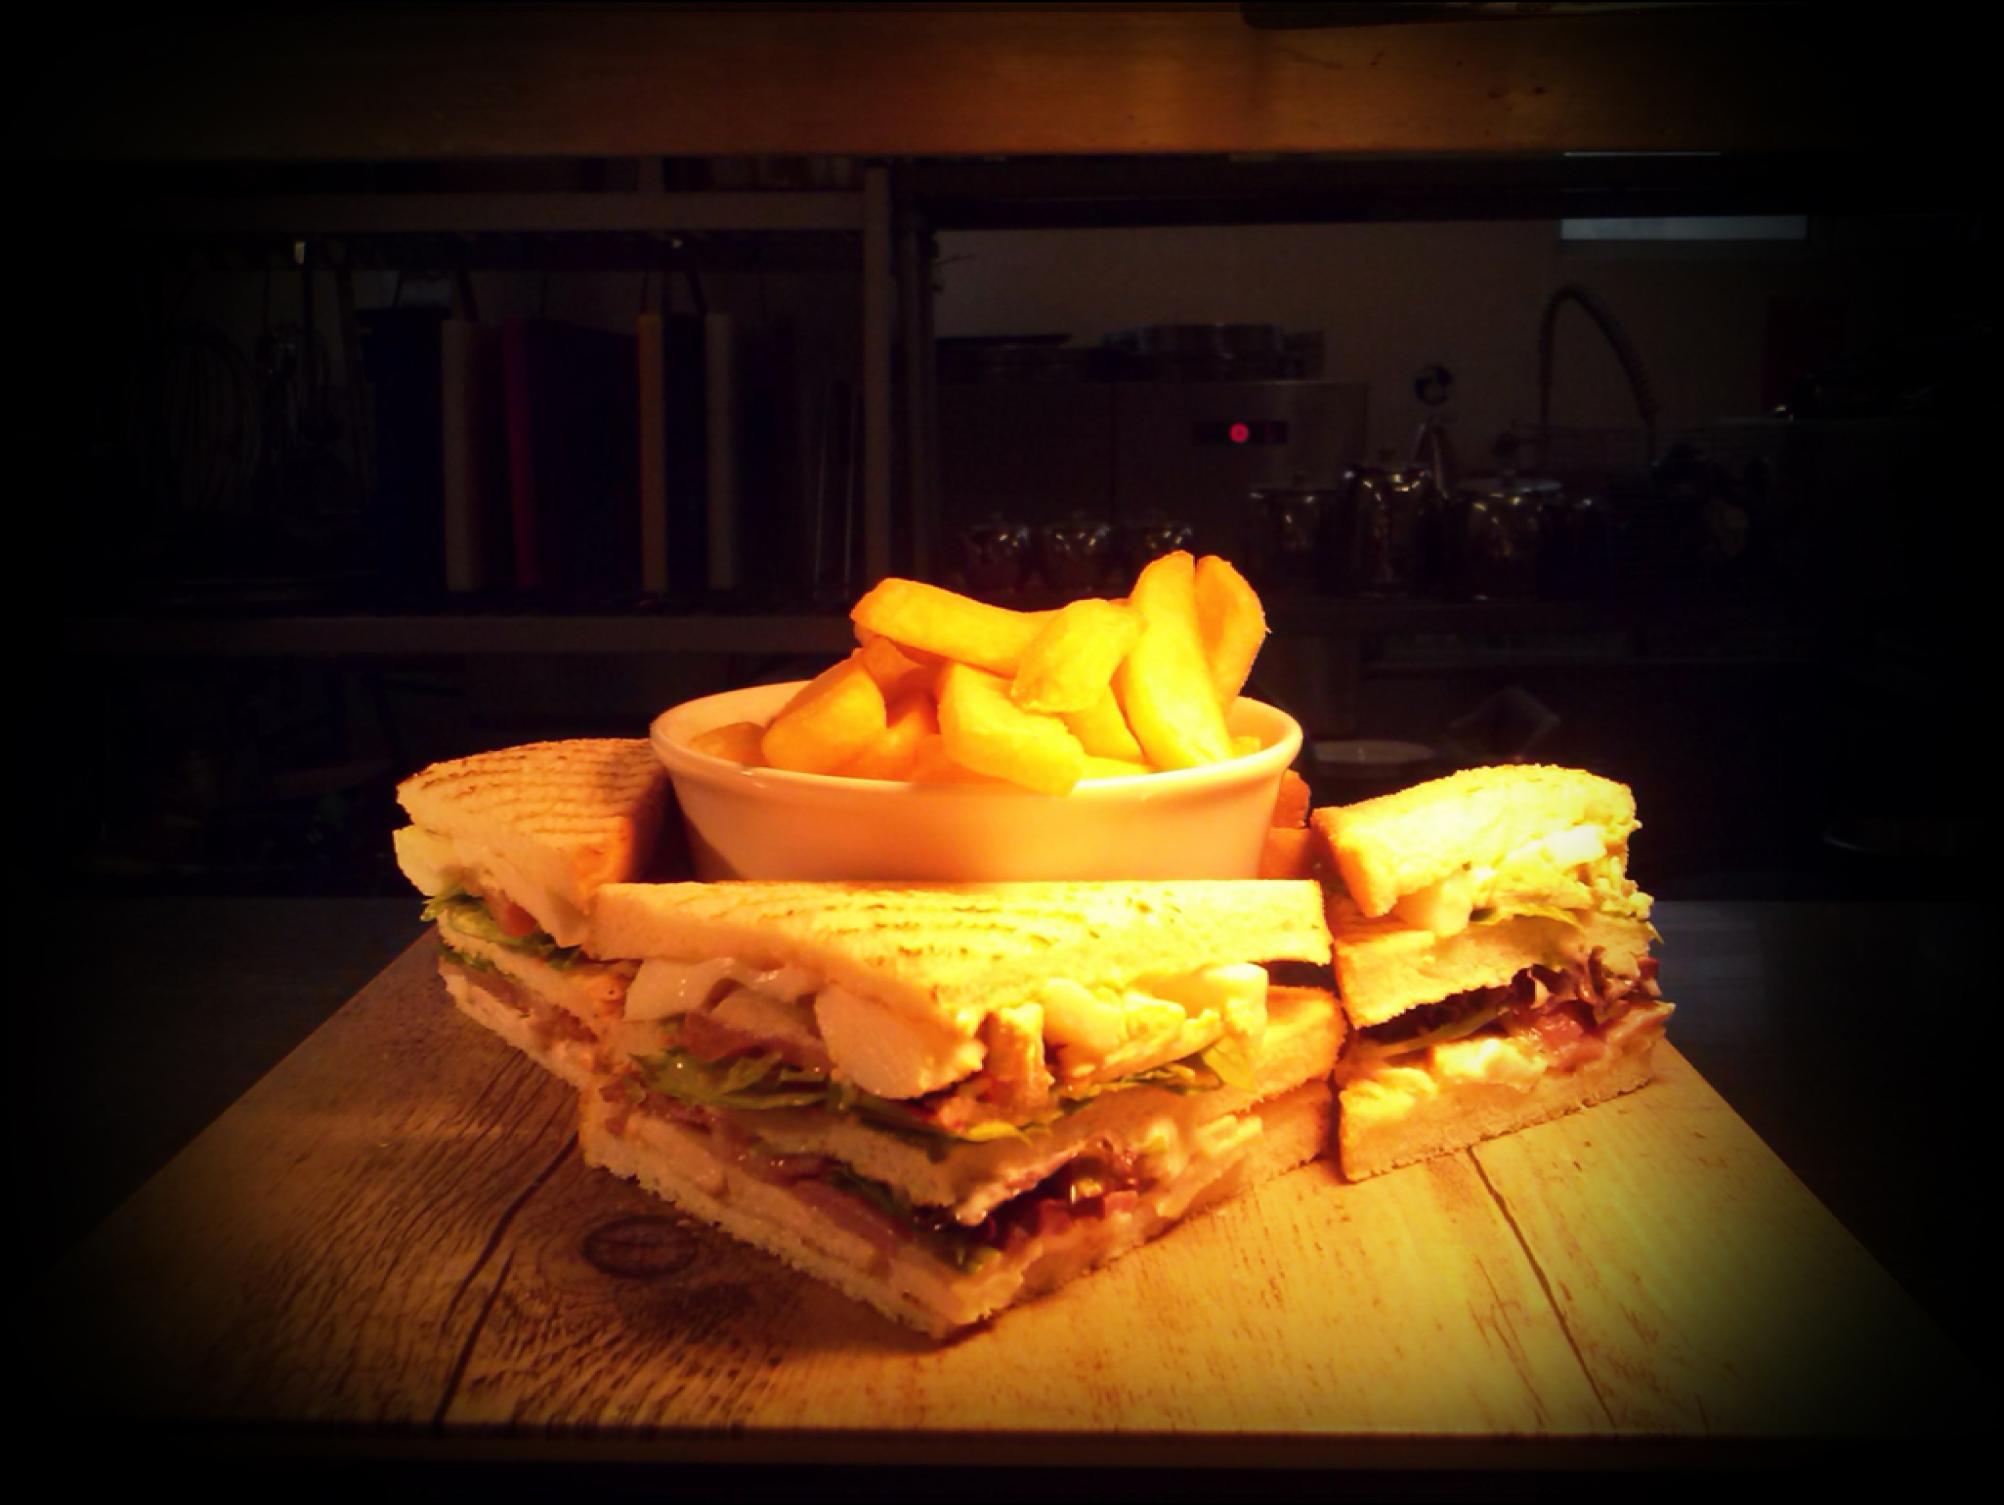 Podczas odbywania stażu najpopularniejszą przekąską serwowaną w hotelu była kanapka Jurys Club Sandwich, podawana na